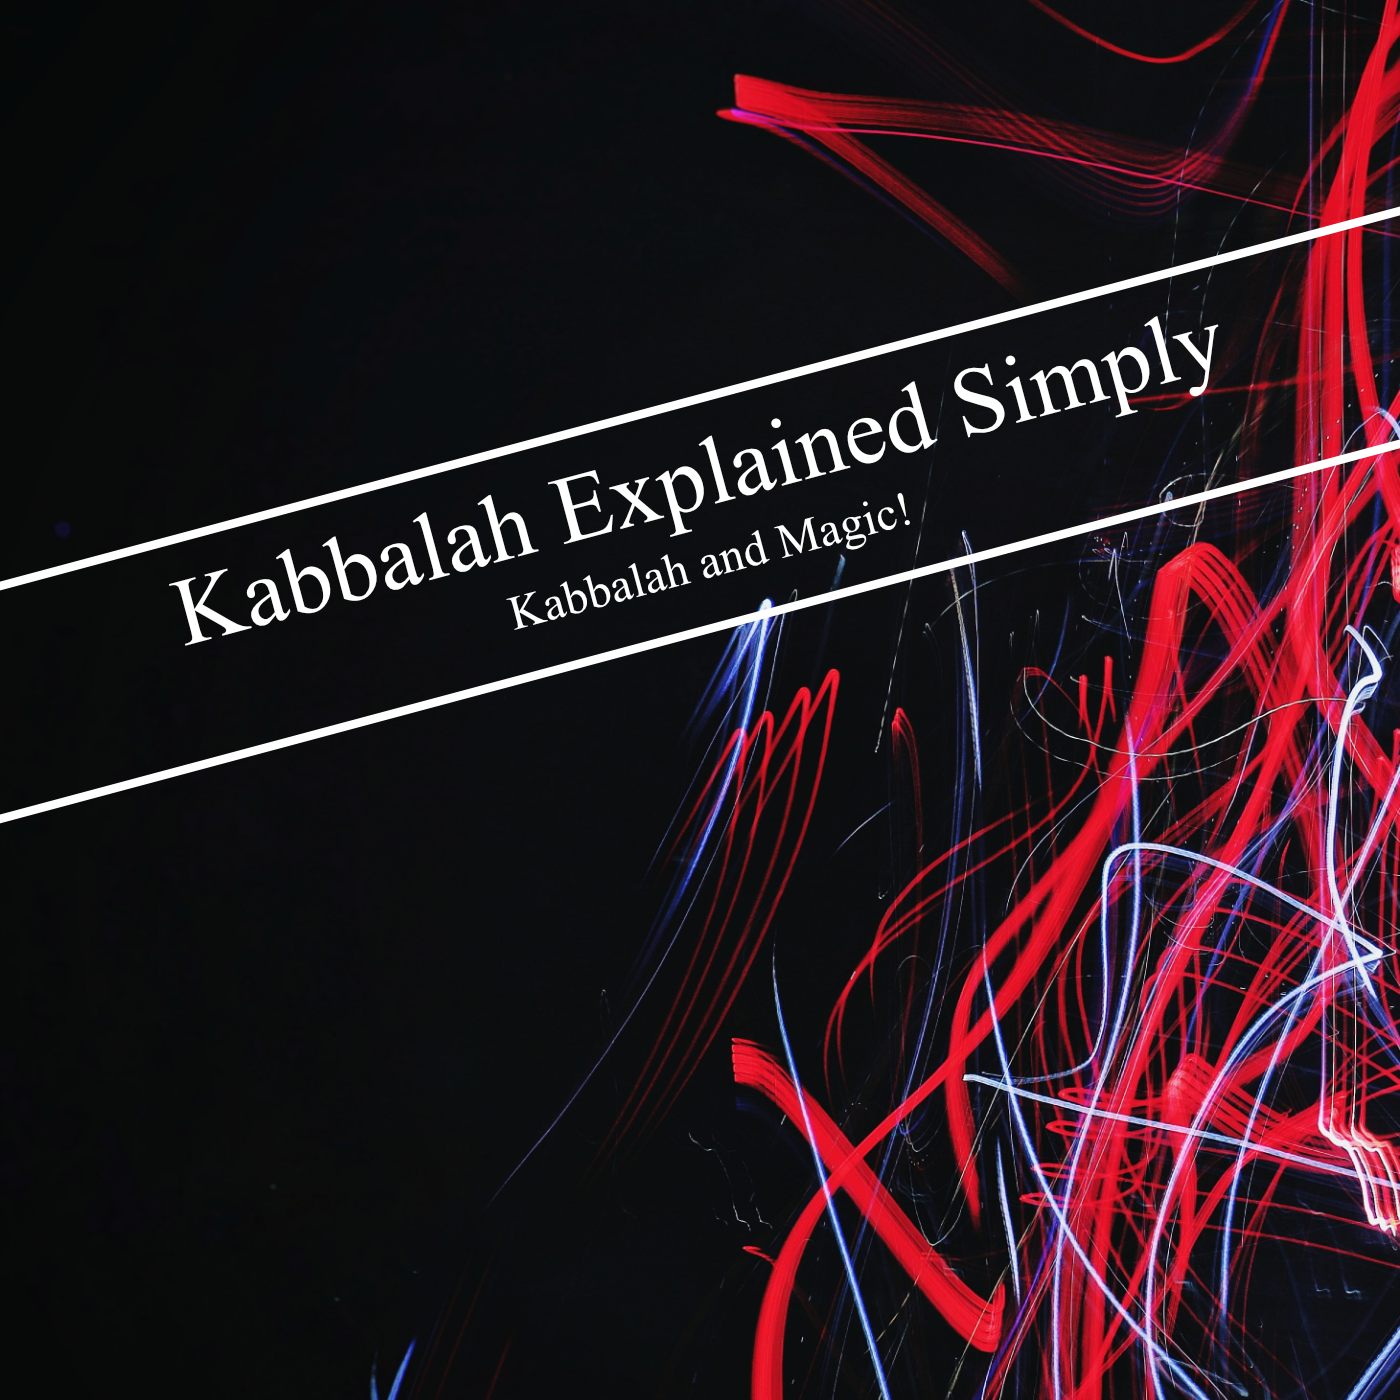 Kabbalah Explained Simply - Kabbalah and Magic!